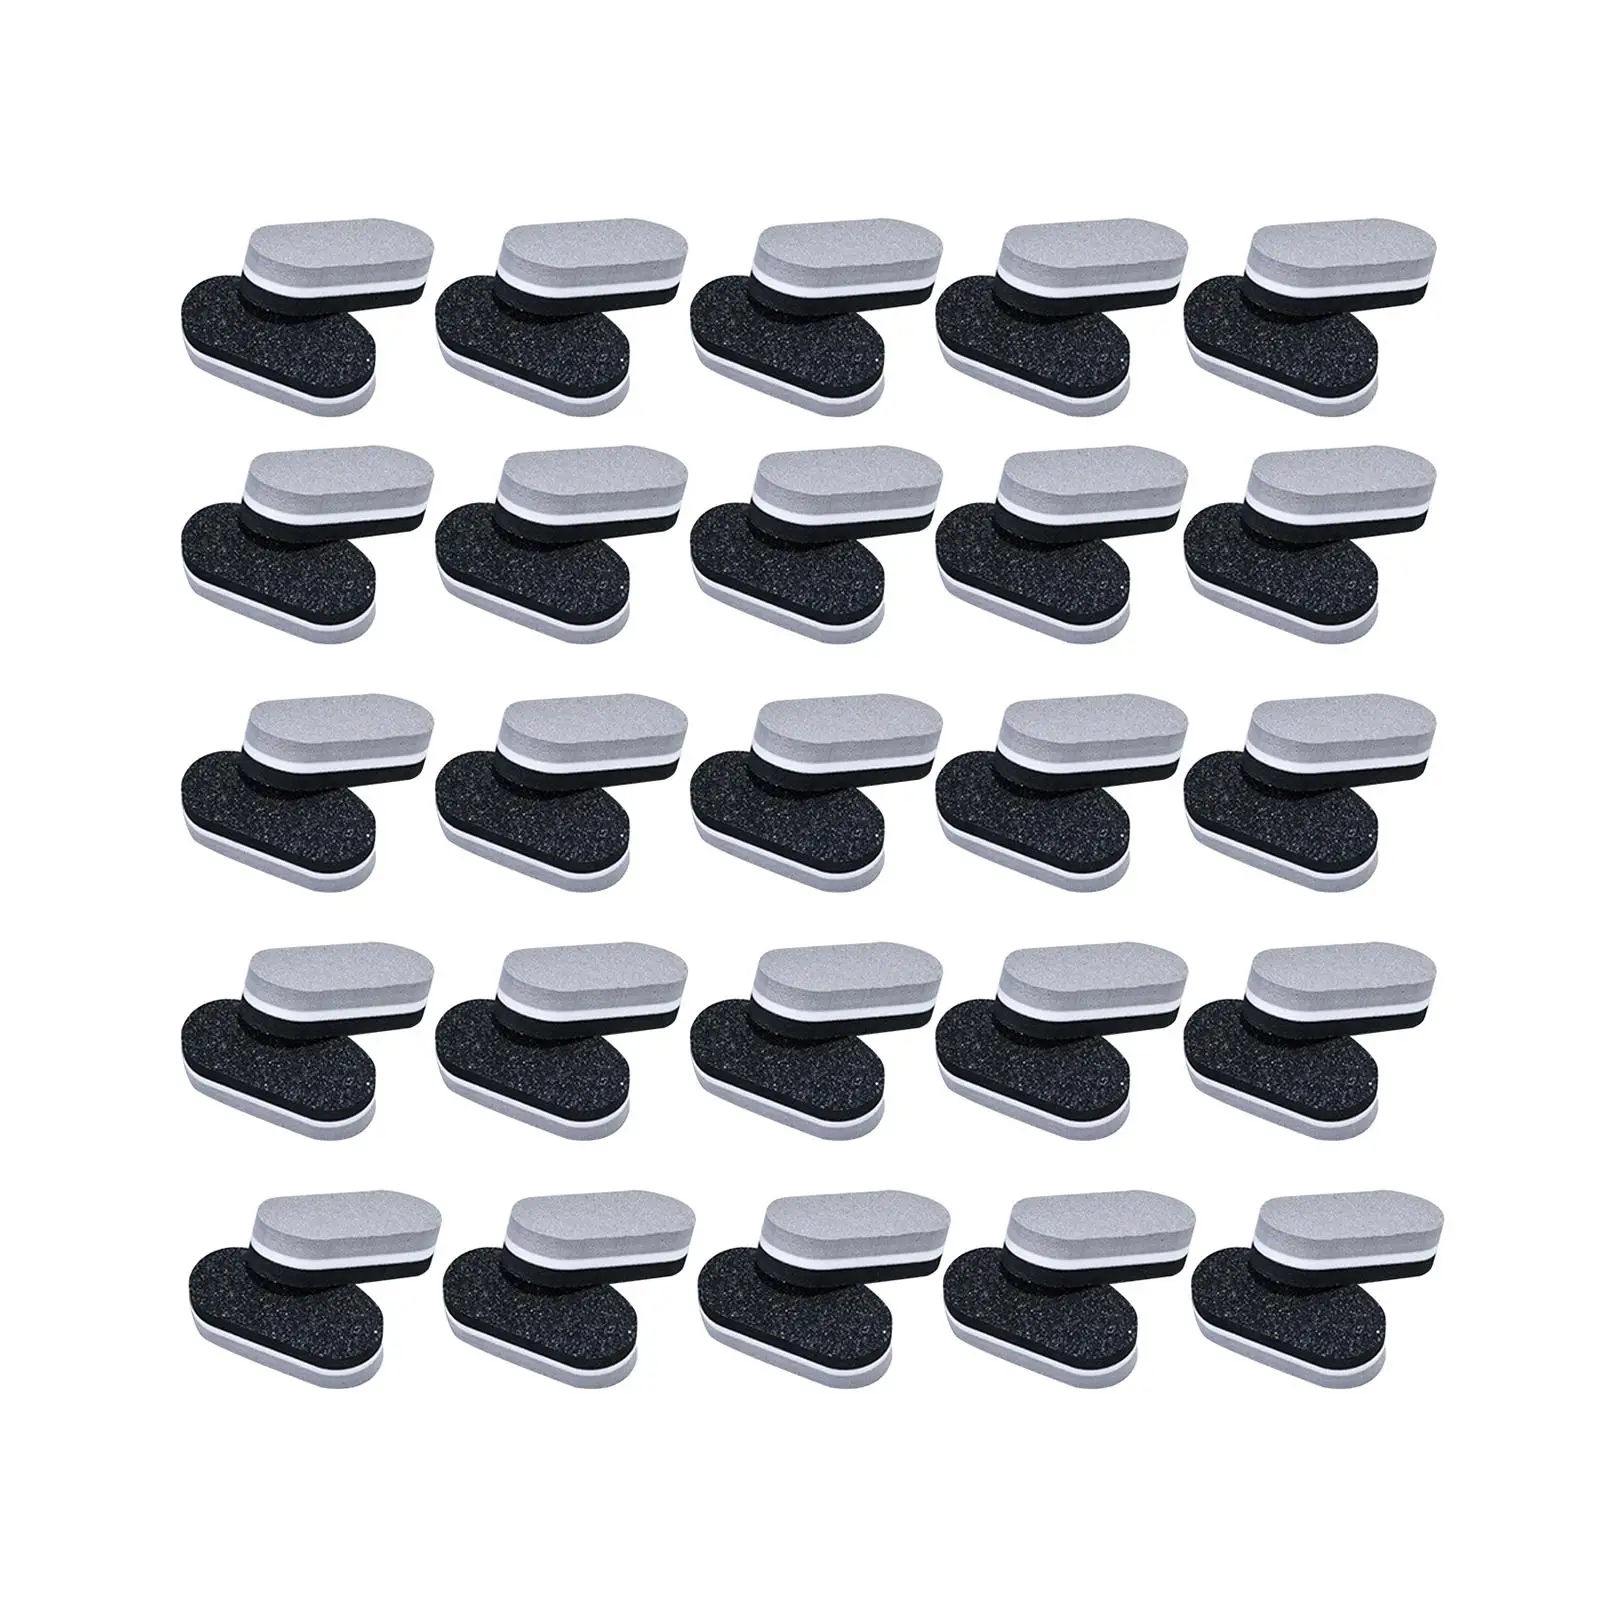 

50x портативные мини пилки для ногтей и буферы акриловый Полировочный блок для ногтей для домашнего салонного использования шлифовальная двухсторонняя губка буферы для ногтей